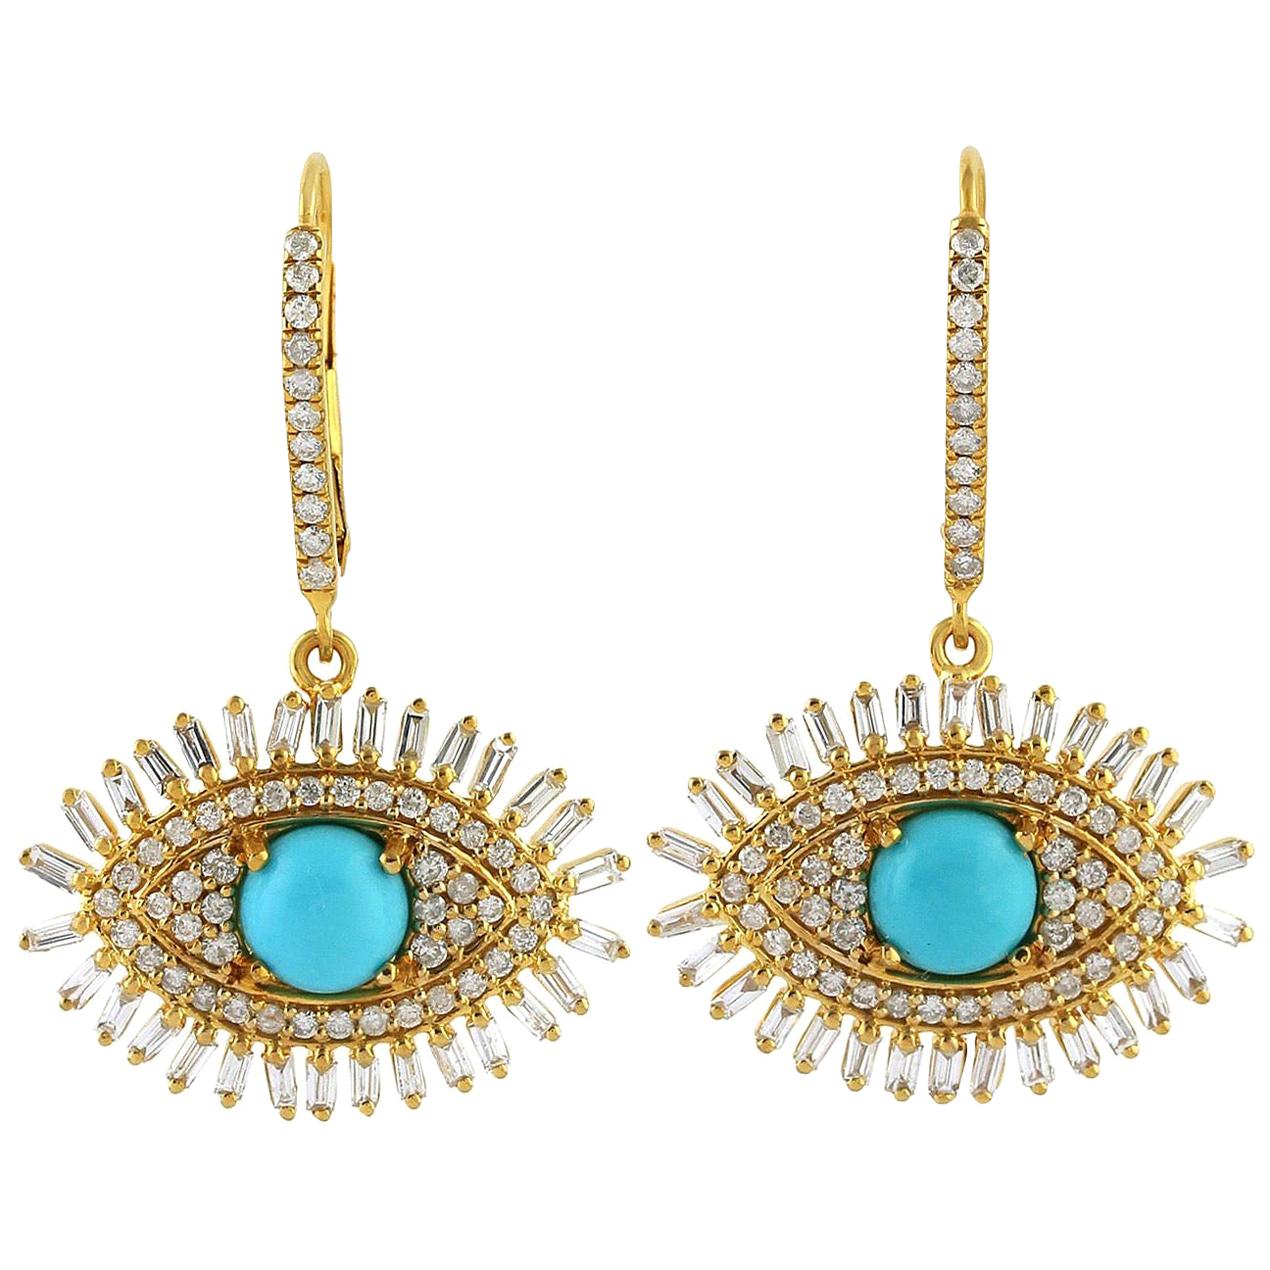 1.9 Carat Turquoise Diamond 18 Karat Gold Evil Eye Earrings For Sale